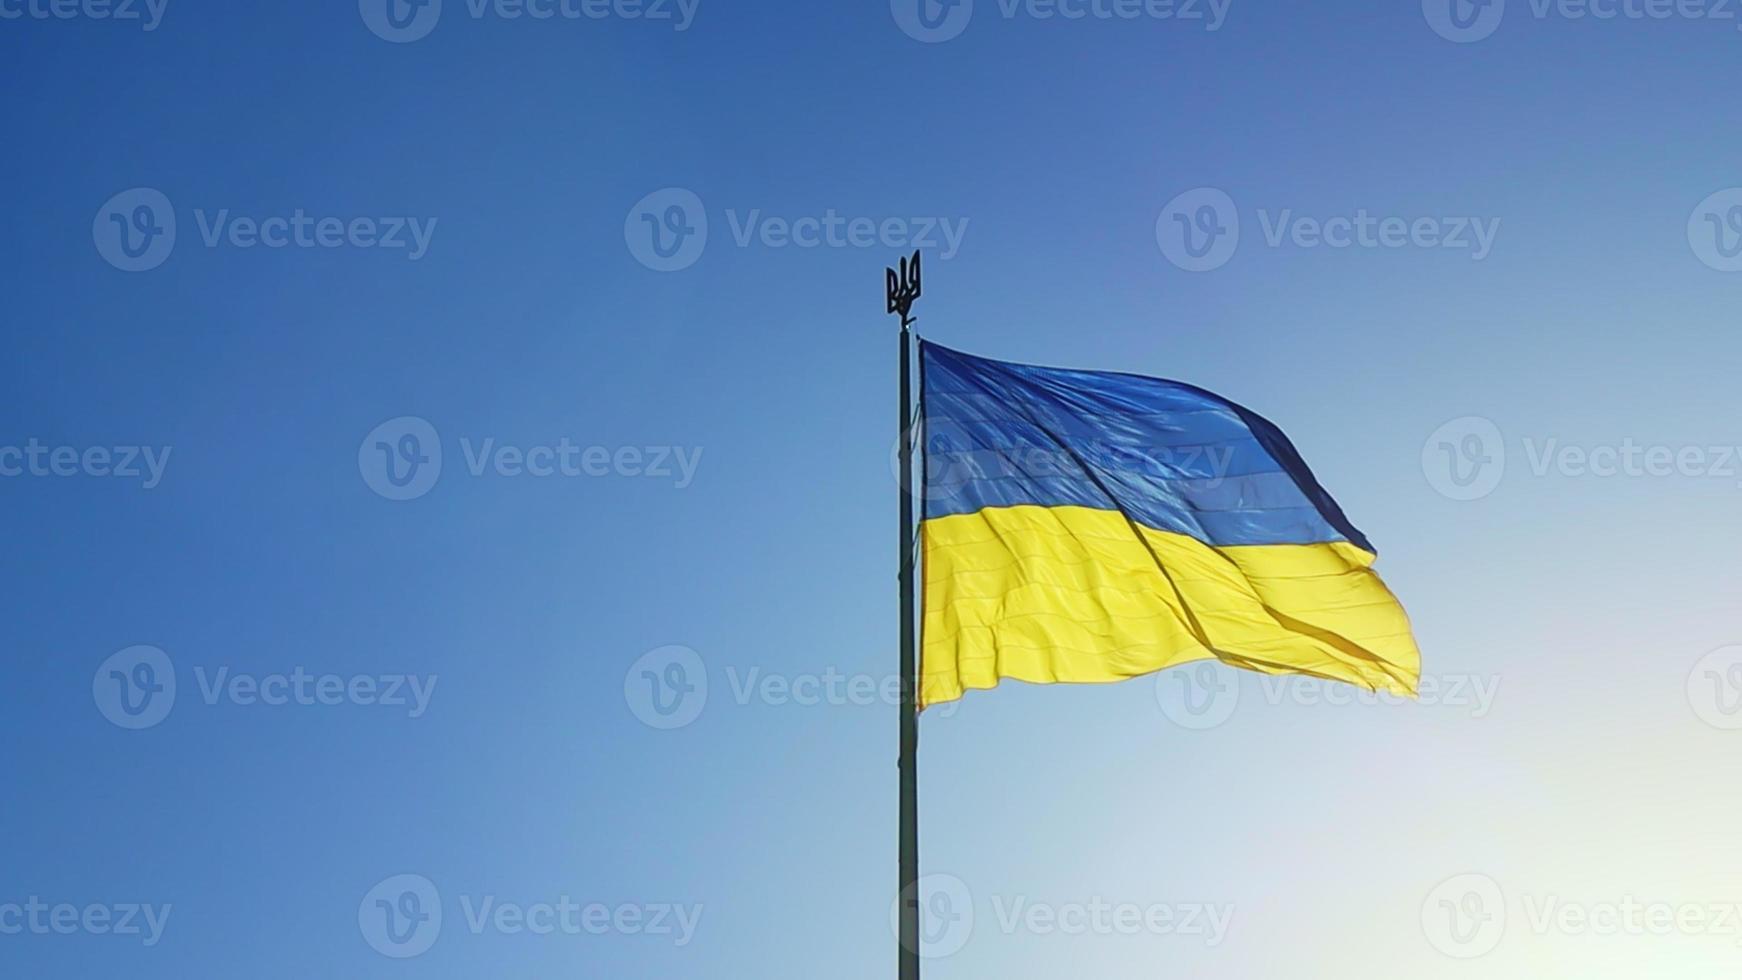 le drapeau ukrainien aux couleurs nationales bleues et jaunes sur le mât flotte au vent contre le ciel bleu et le soleil levant du matin. le symbole officiel de l'état des Ukrainiens. patriotisme. photo